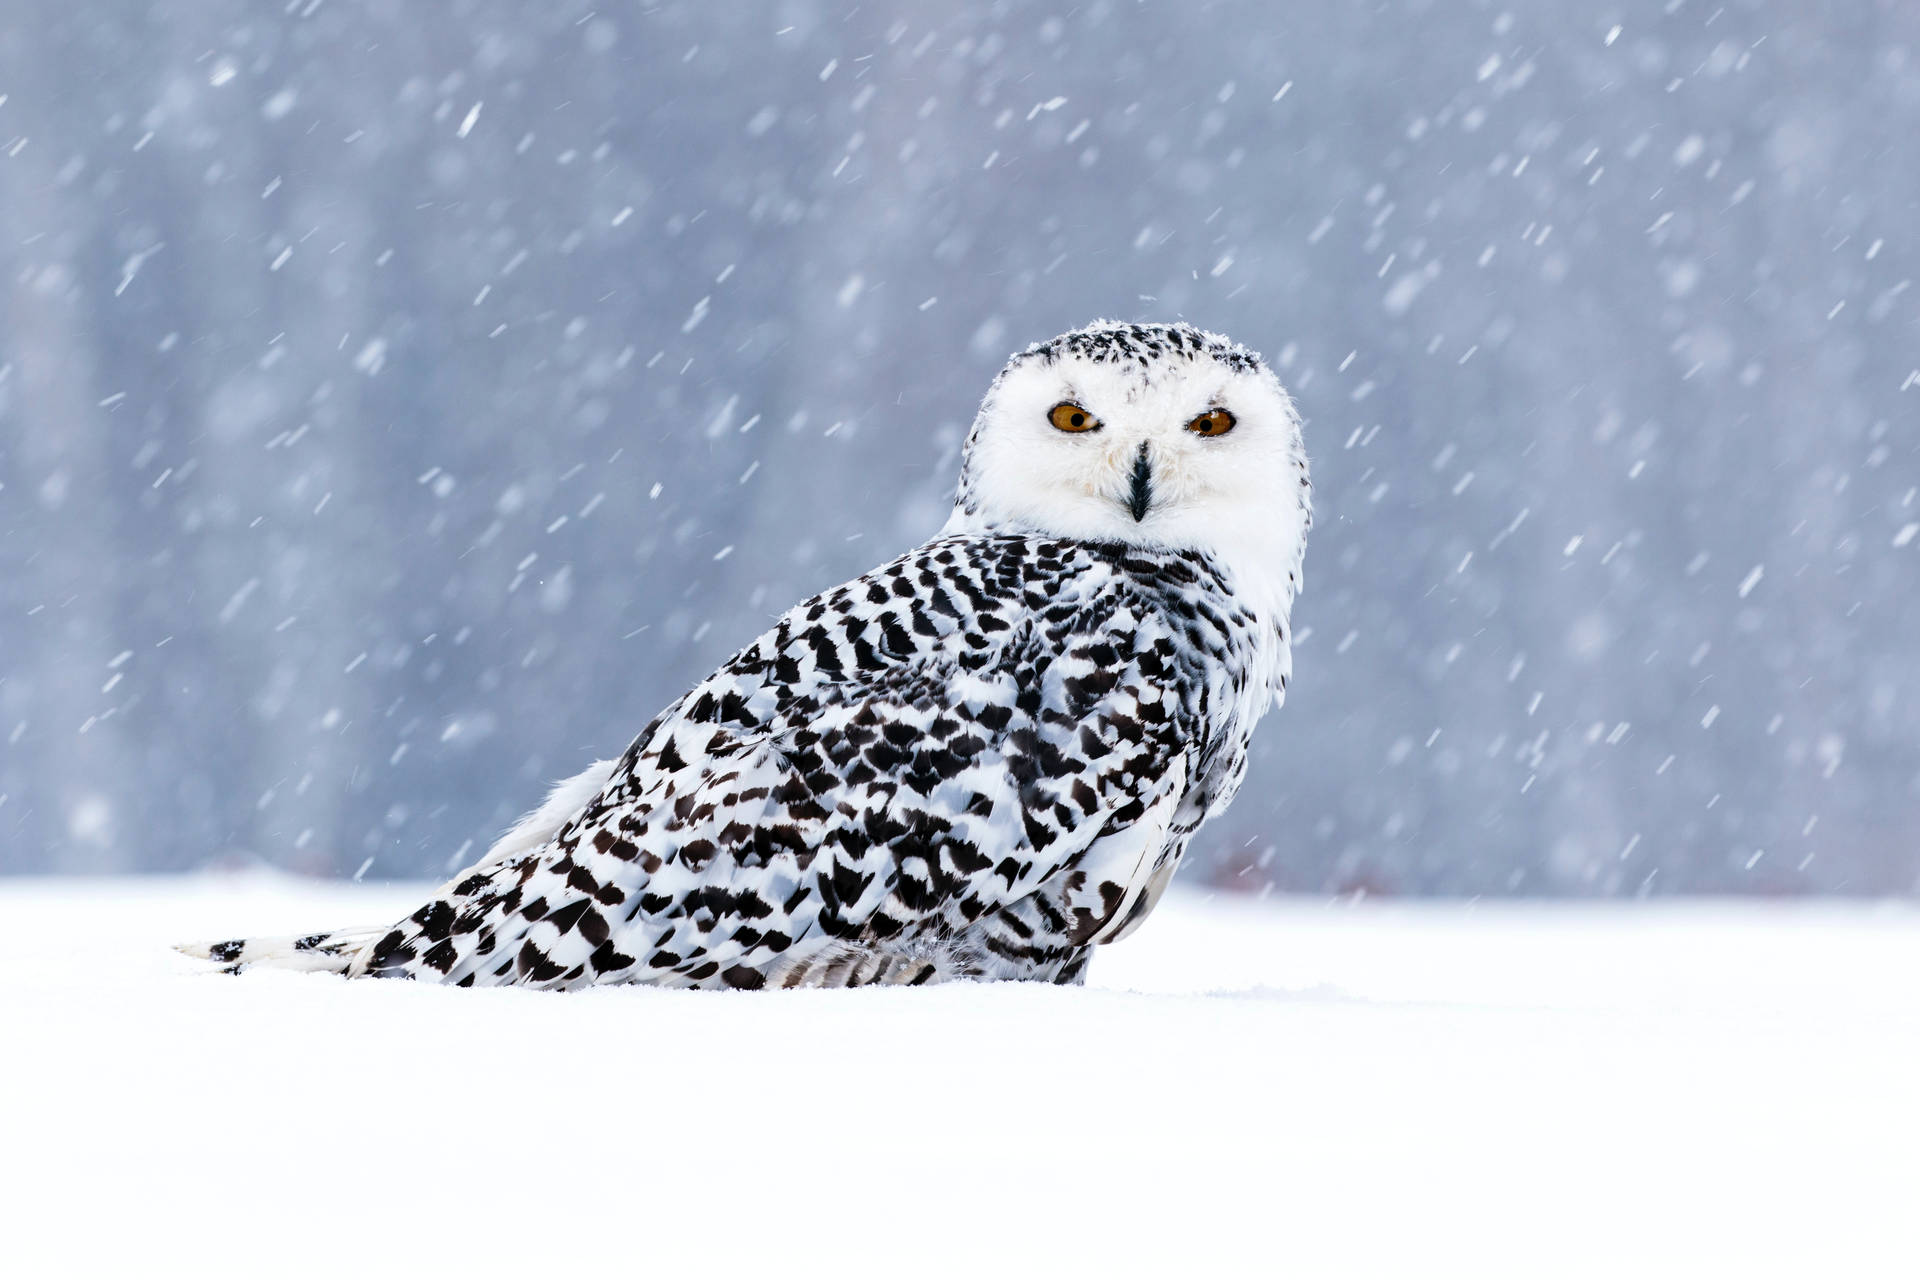 Cute Owl In Winter Wallpaper